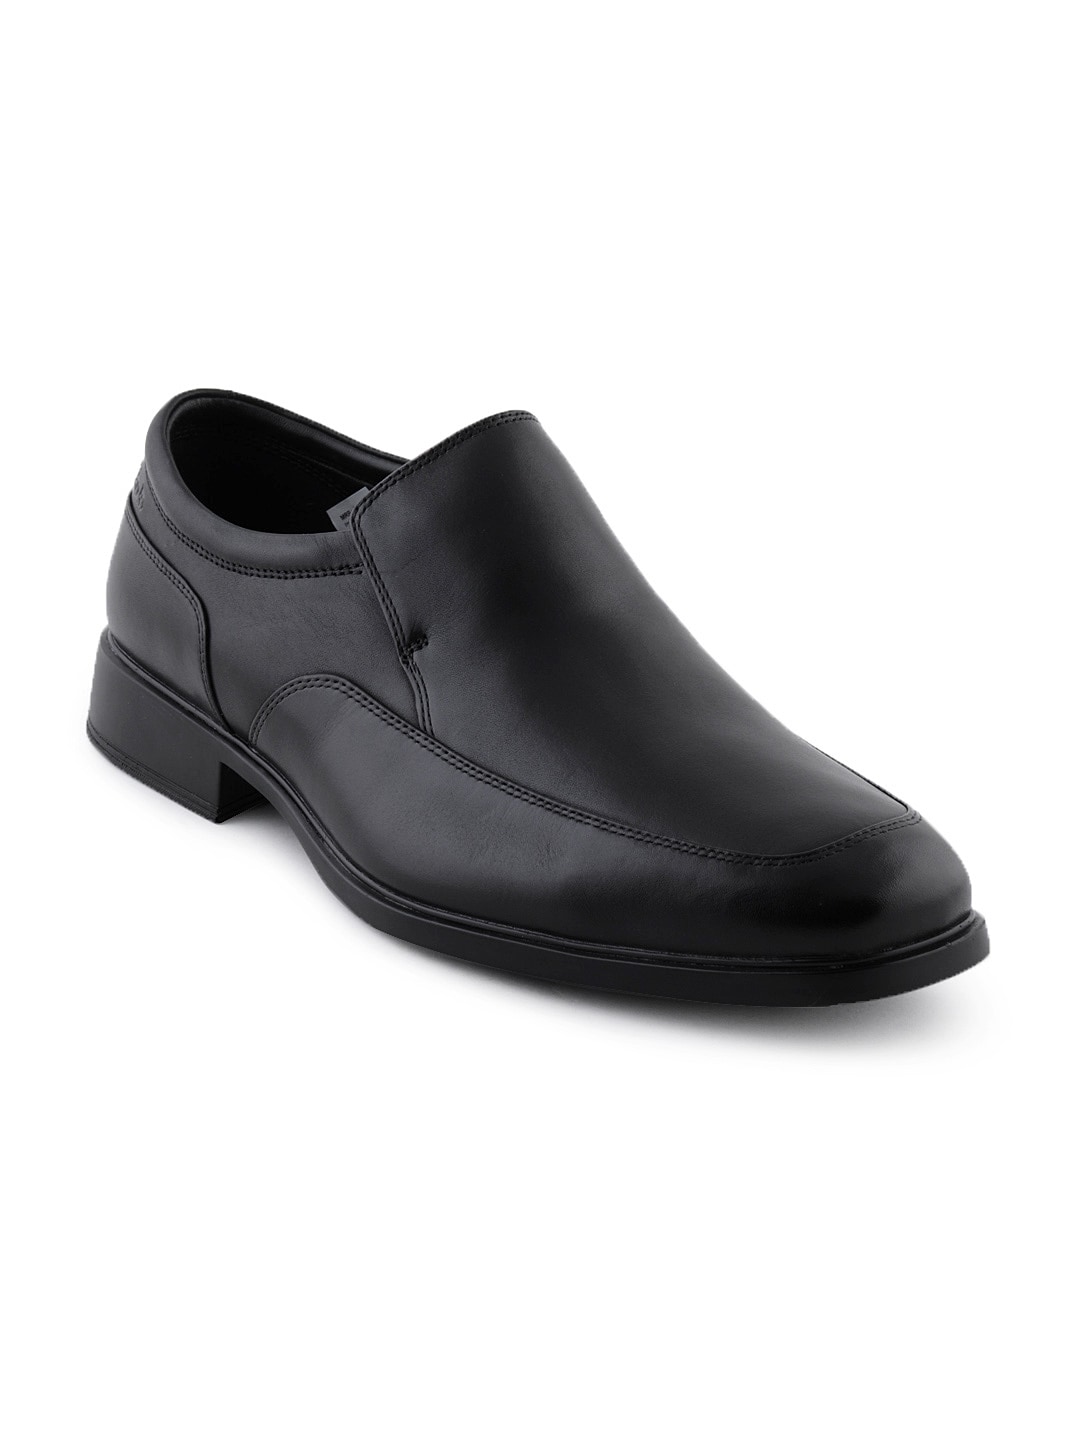 Clarks Men Black Leather Formal Shoes